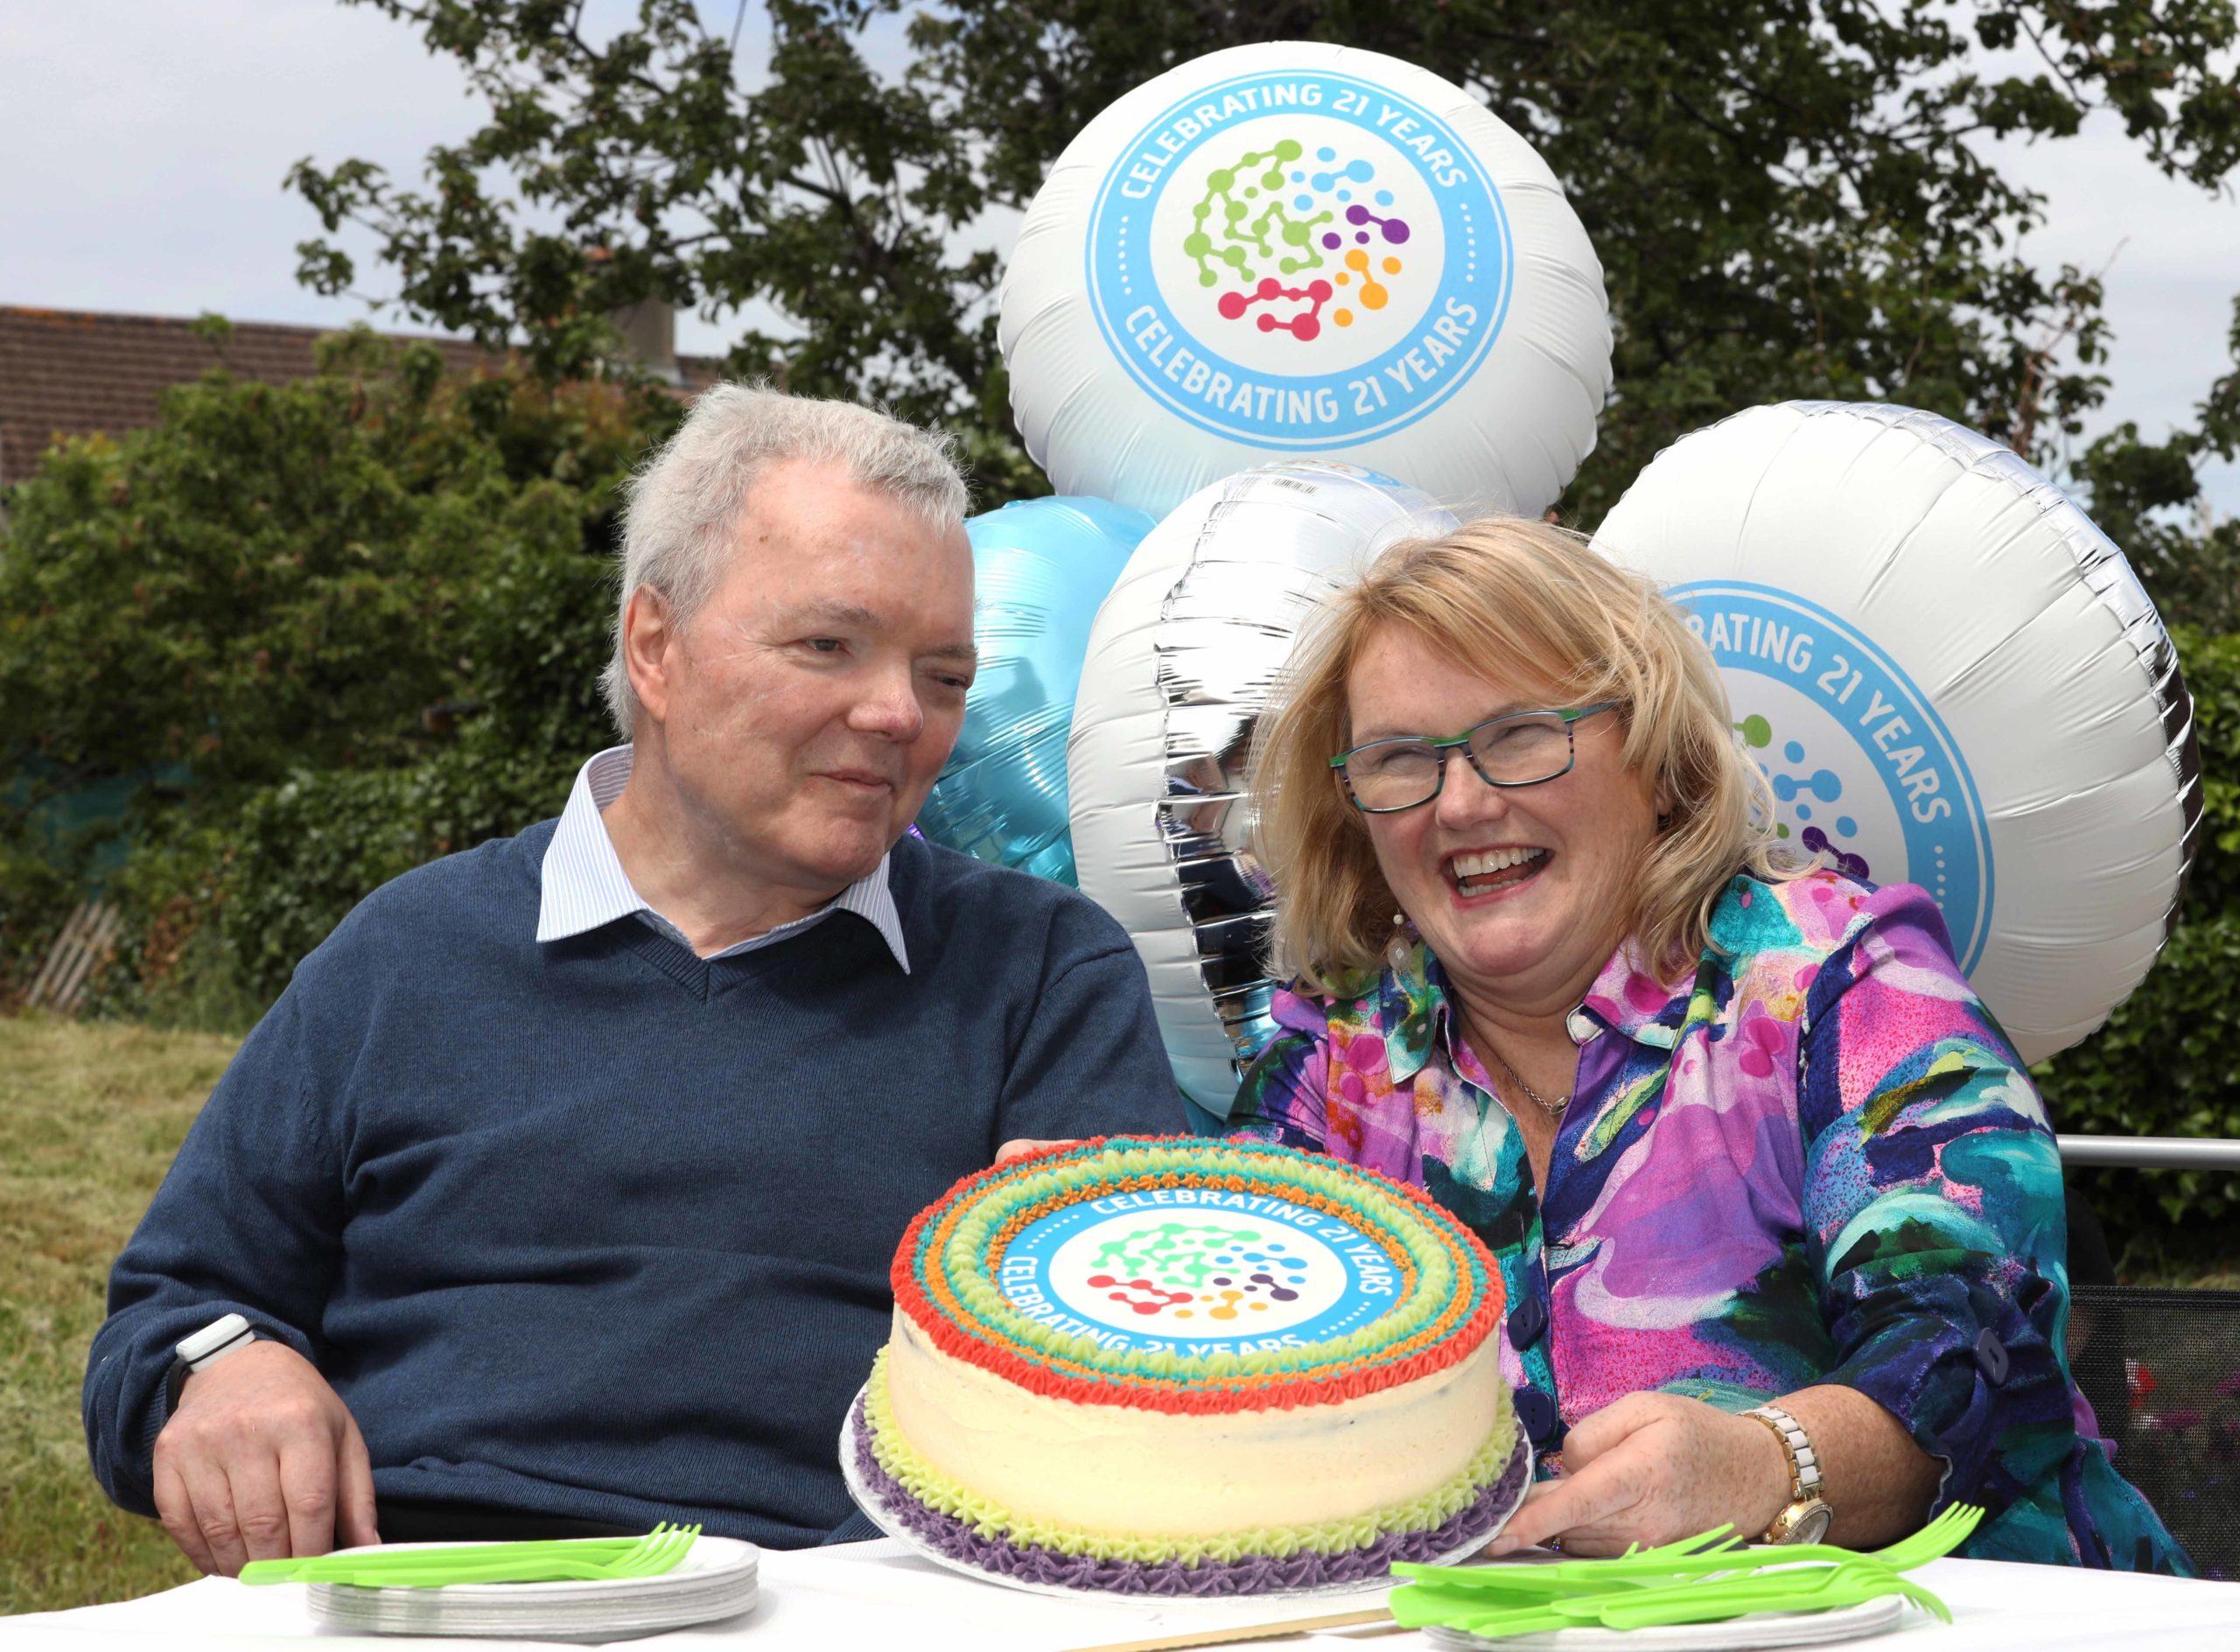 Celebrating 21 years of Acquired Brain Injury Ireland